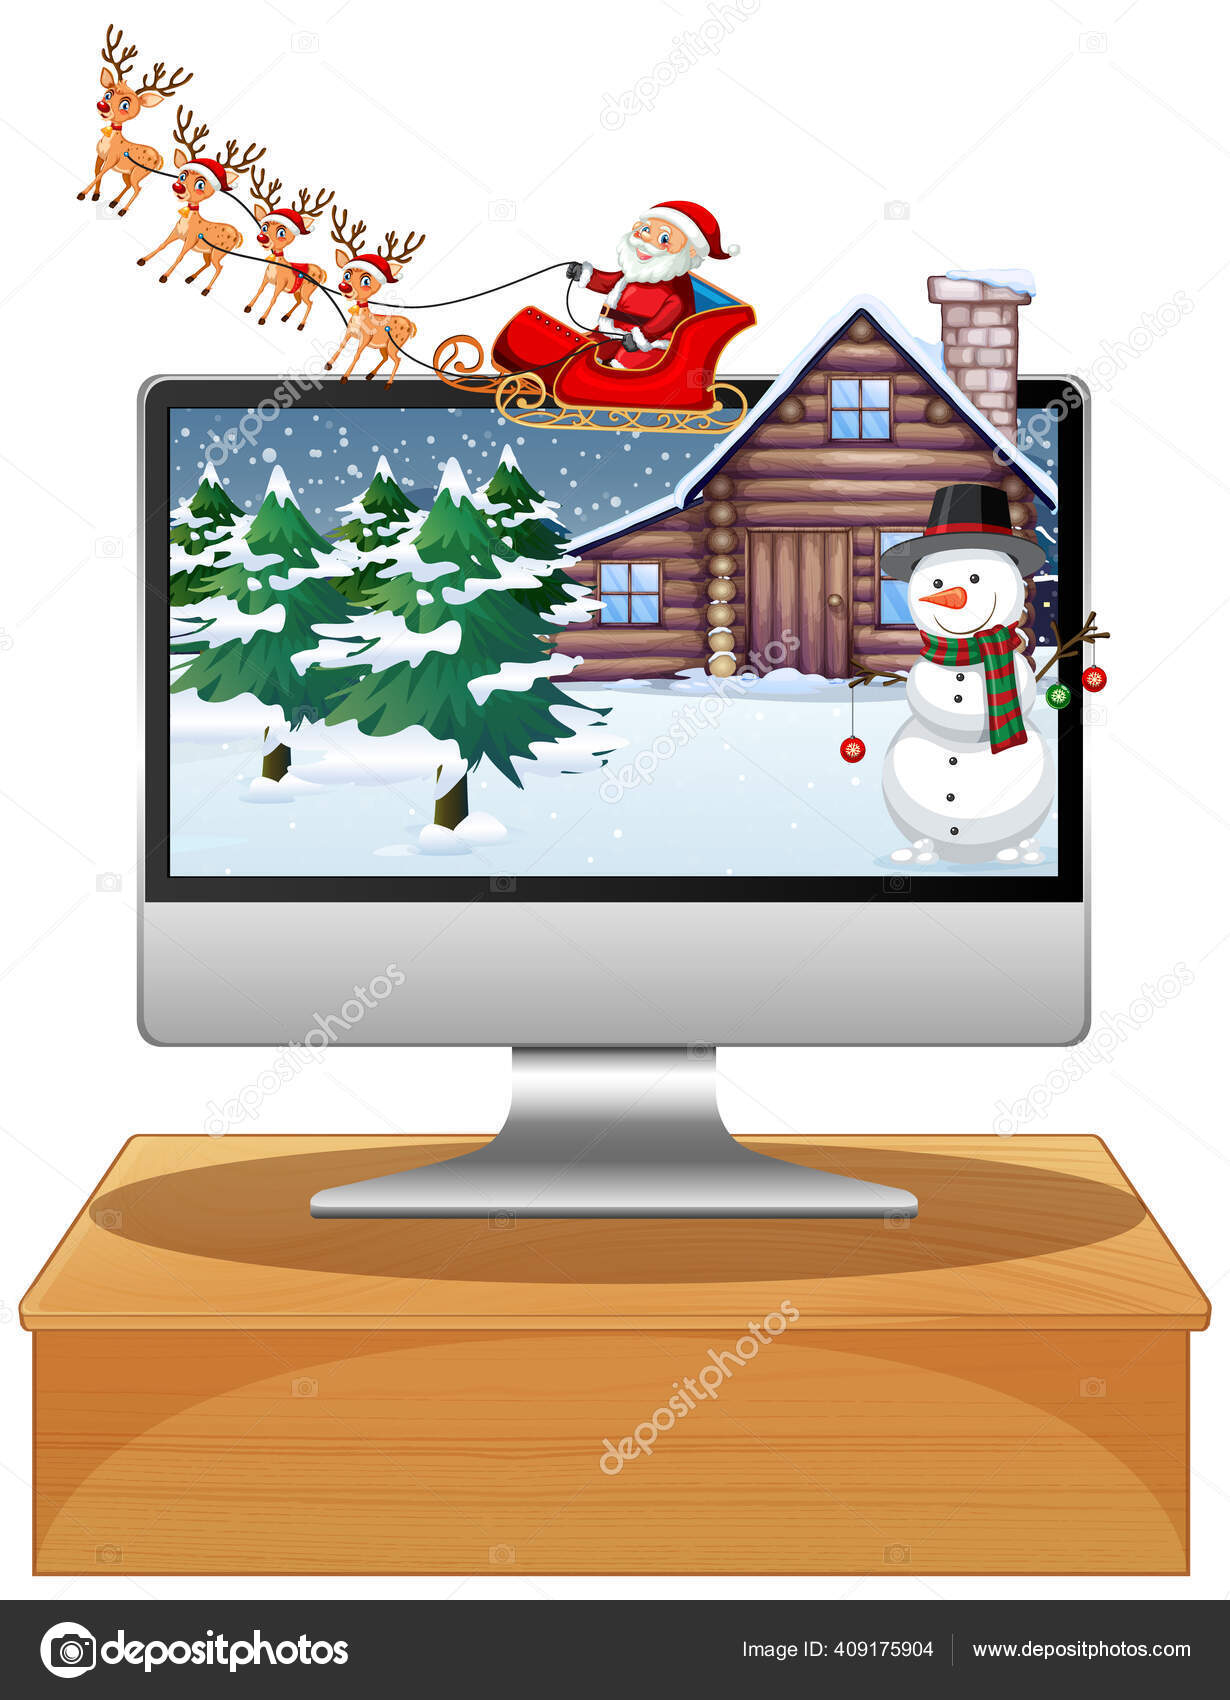 Winter Weihnachten Auf Dem Computer Bildschirm Desktop Illustration Vektorgrafik Lizenzfreie Grafiken C Interactimages Depositphotos